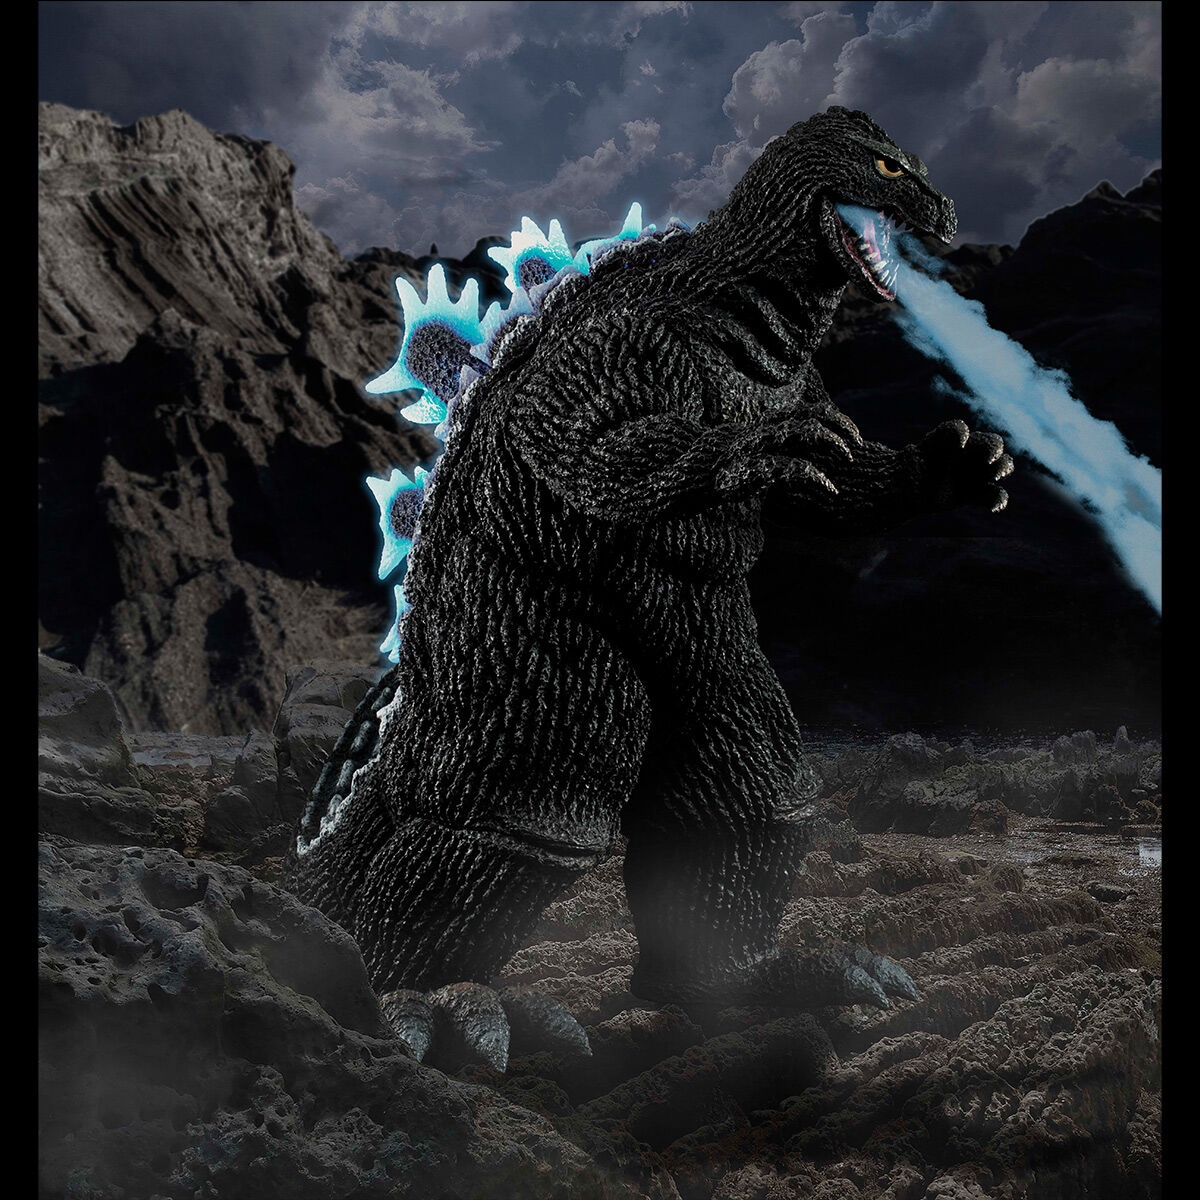 UA Monsters Godzilla (1962)